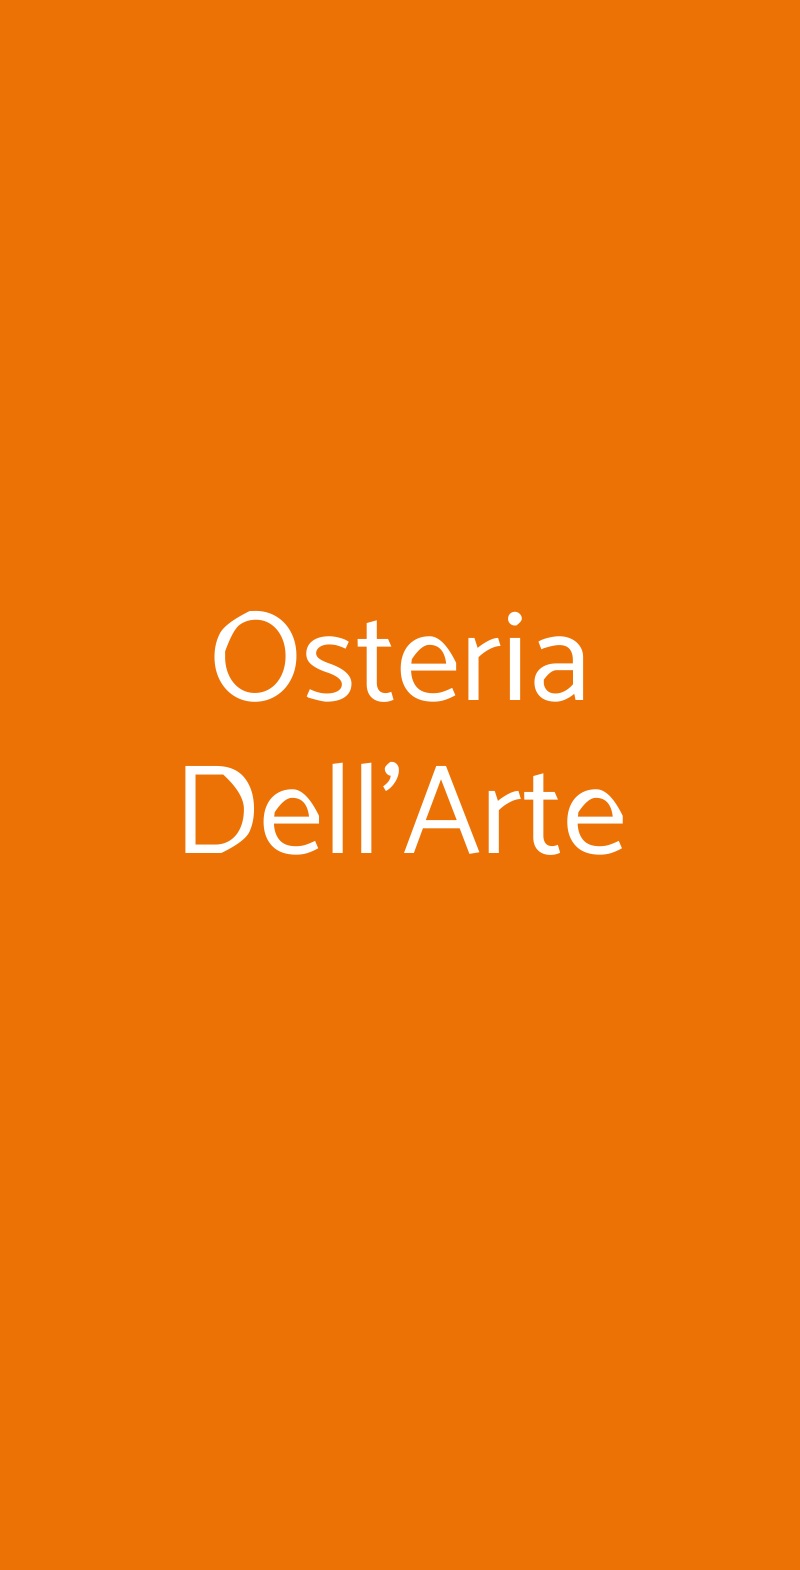 Osteria Dell'Arte Milano menù 1 pagina